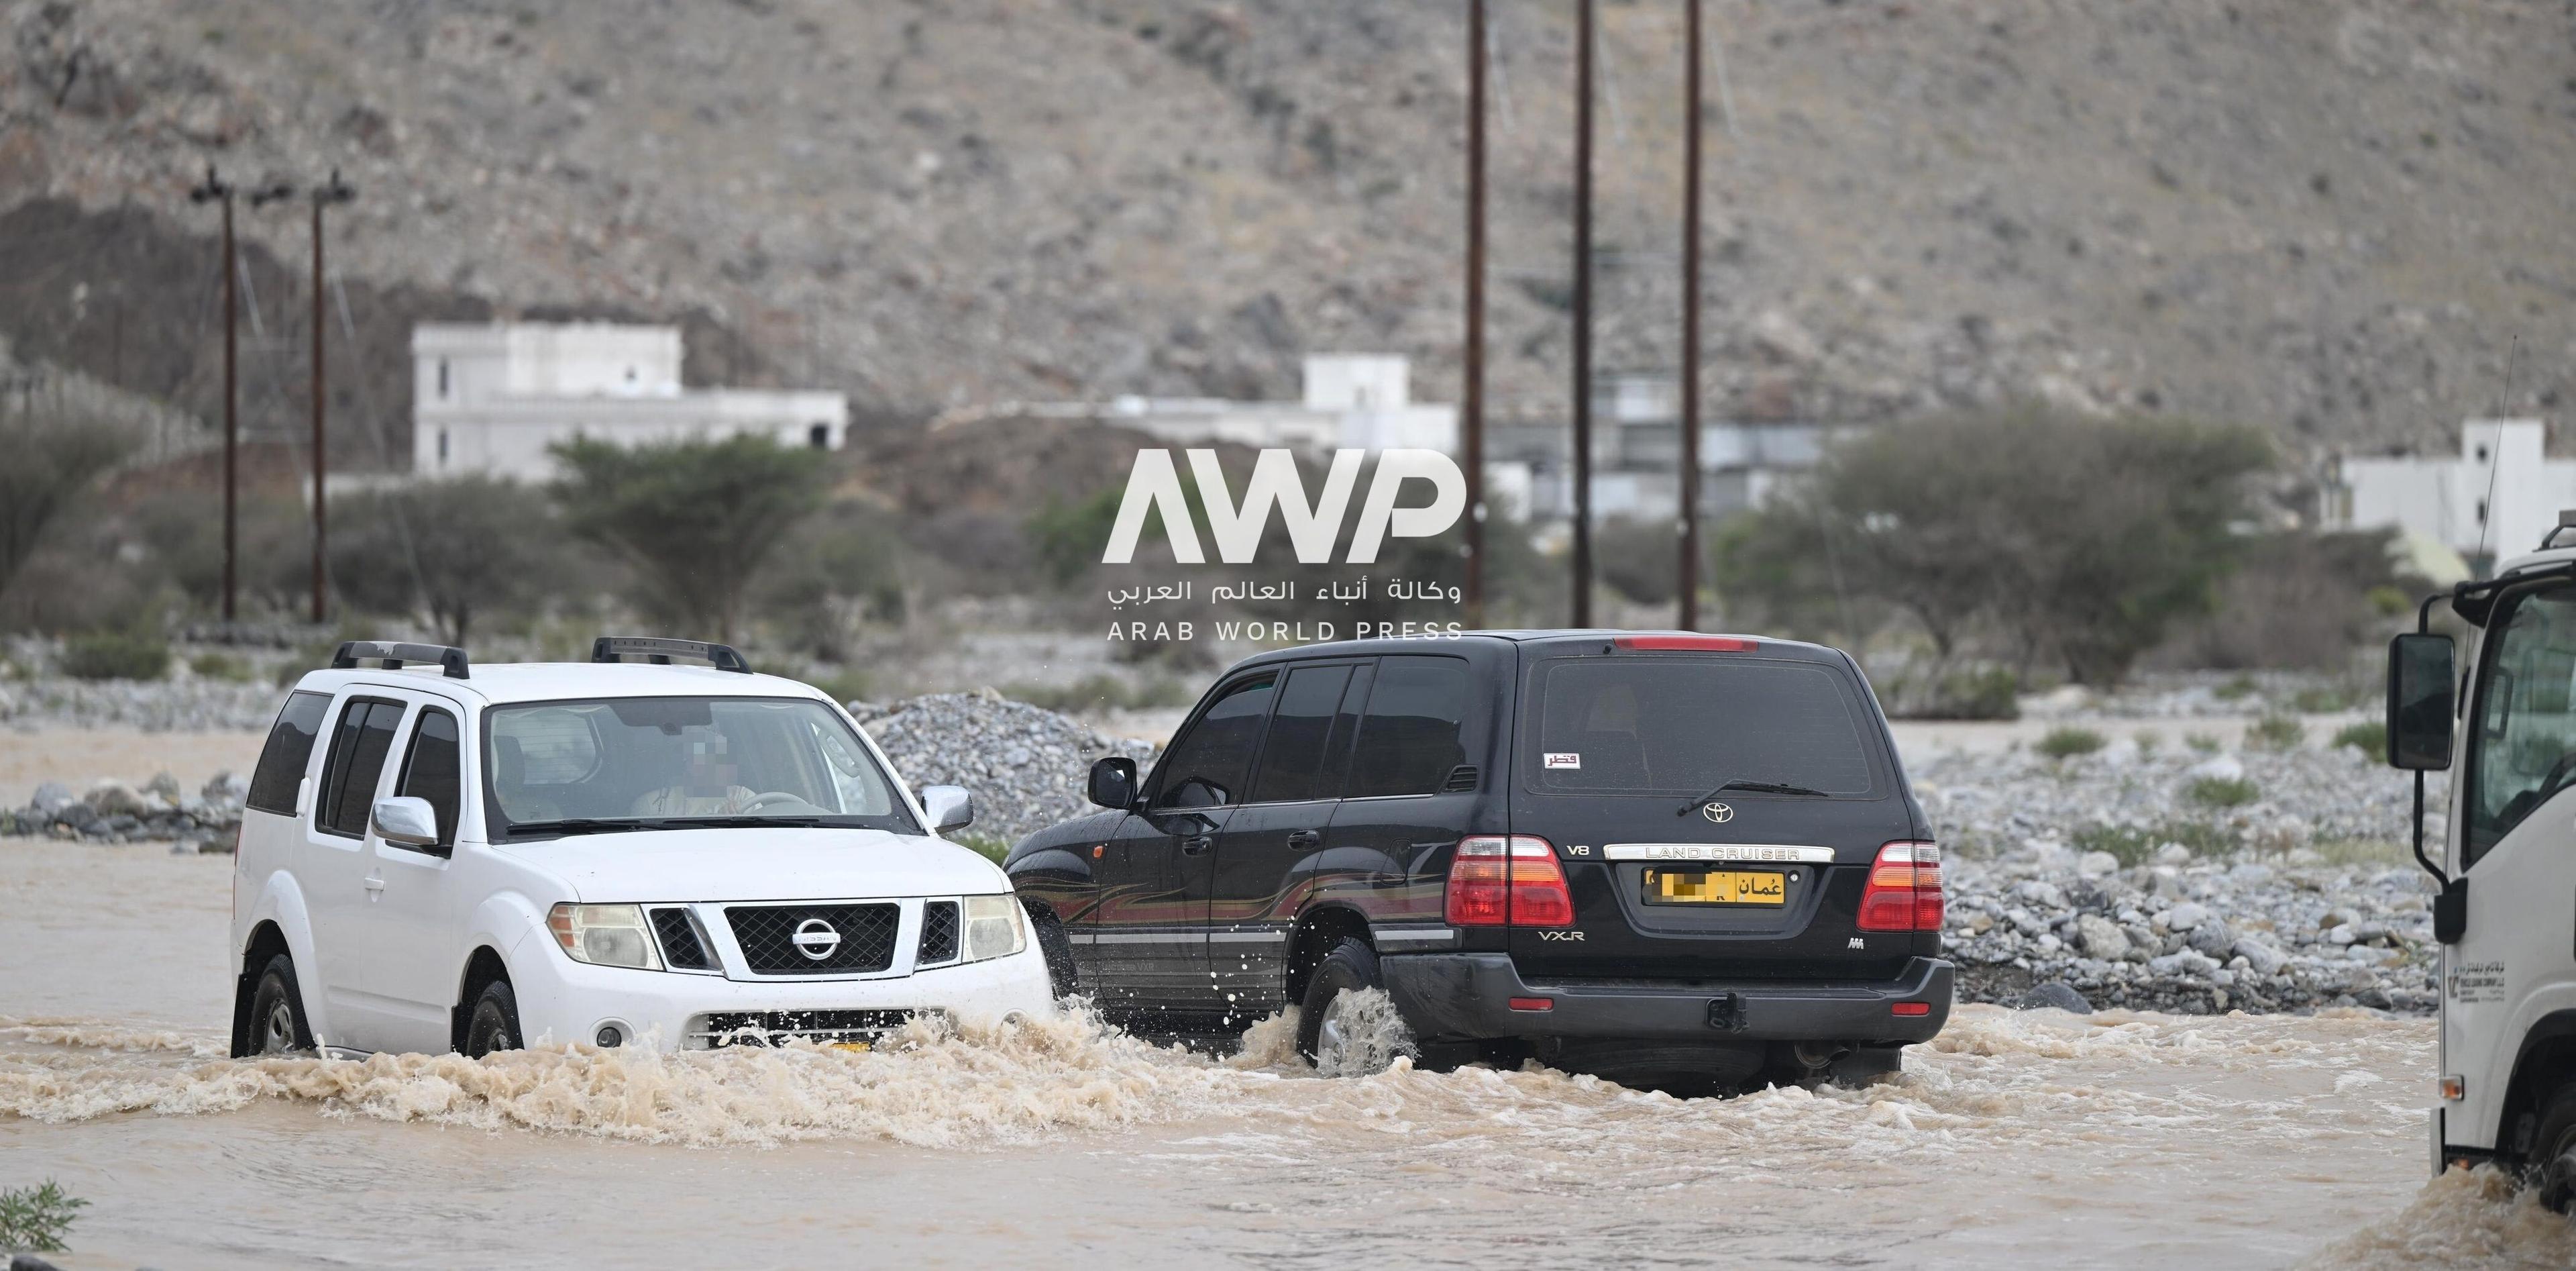 سلطنة عمان والإمارات تعلنان انتهاء موجة طقس سيء سببها منخفض جوي